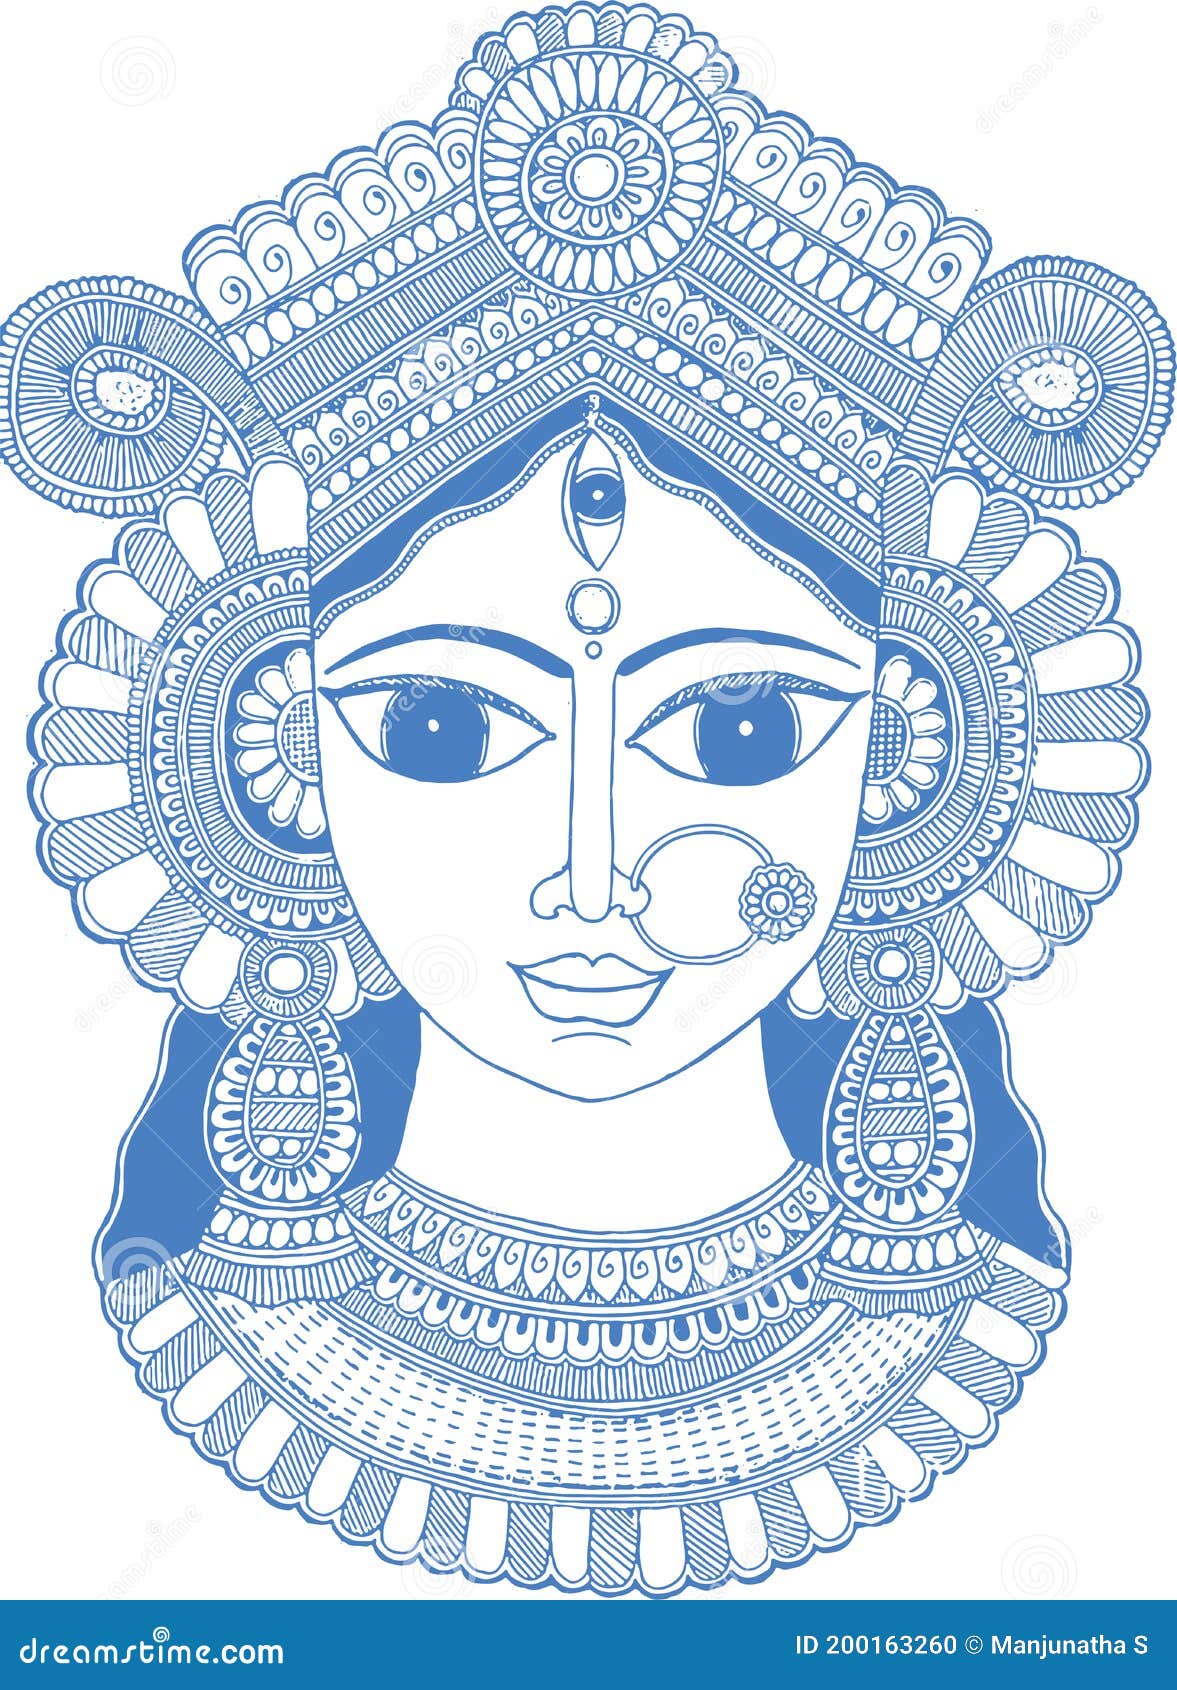 How To Draw Maa Kali  Mahakali Drawing Easy  Navratri Special Drawing   Kali Maa Face Drawing  YouTube  Art drawings simple Easy drawings  Face drawing